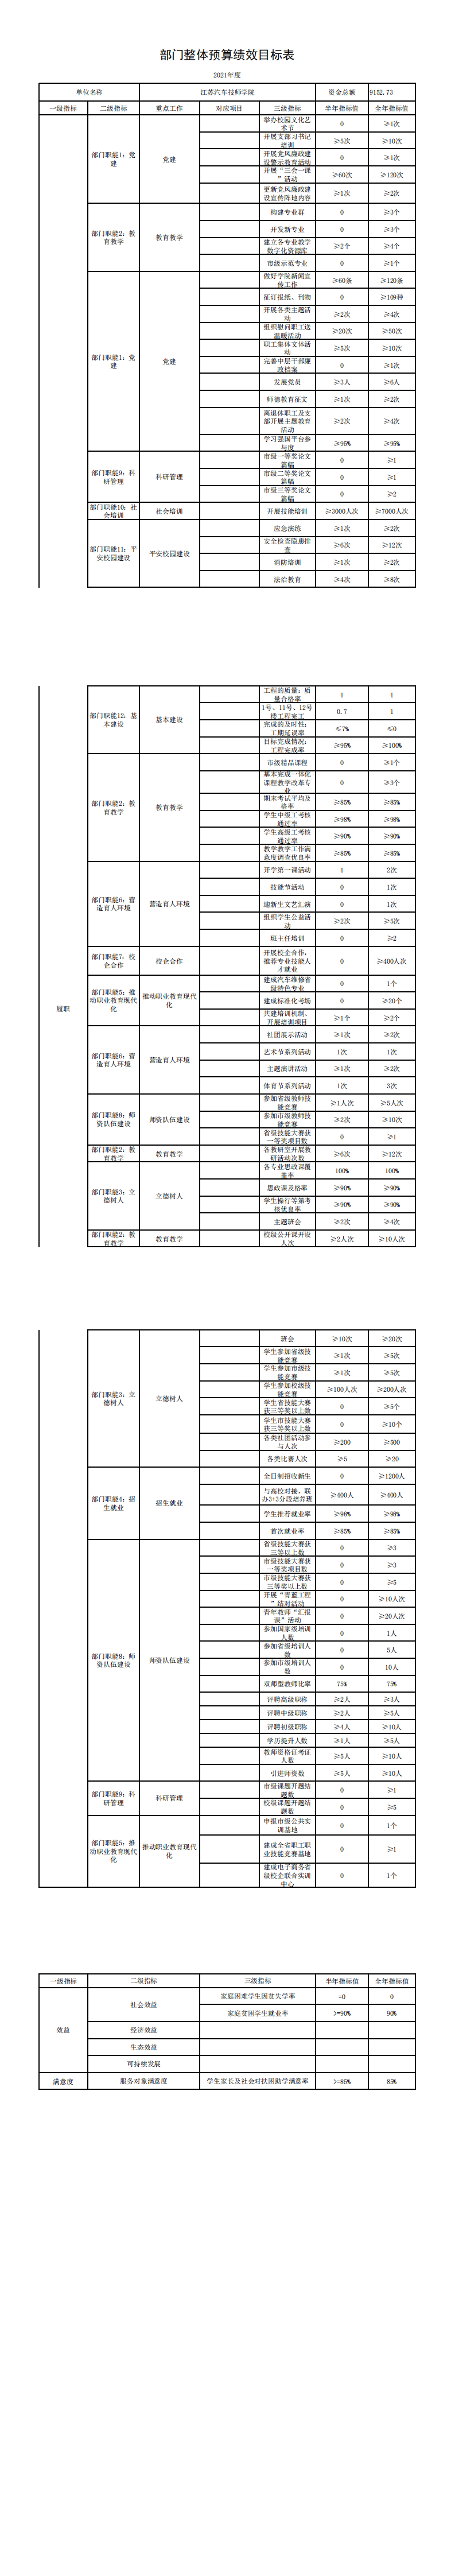 江苏汽车技师学院部门整体预算绩效目标_0.png